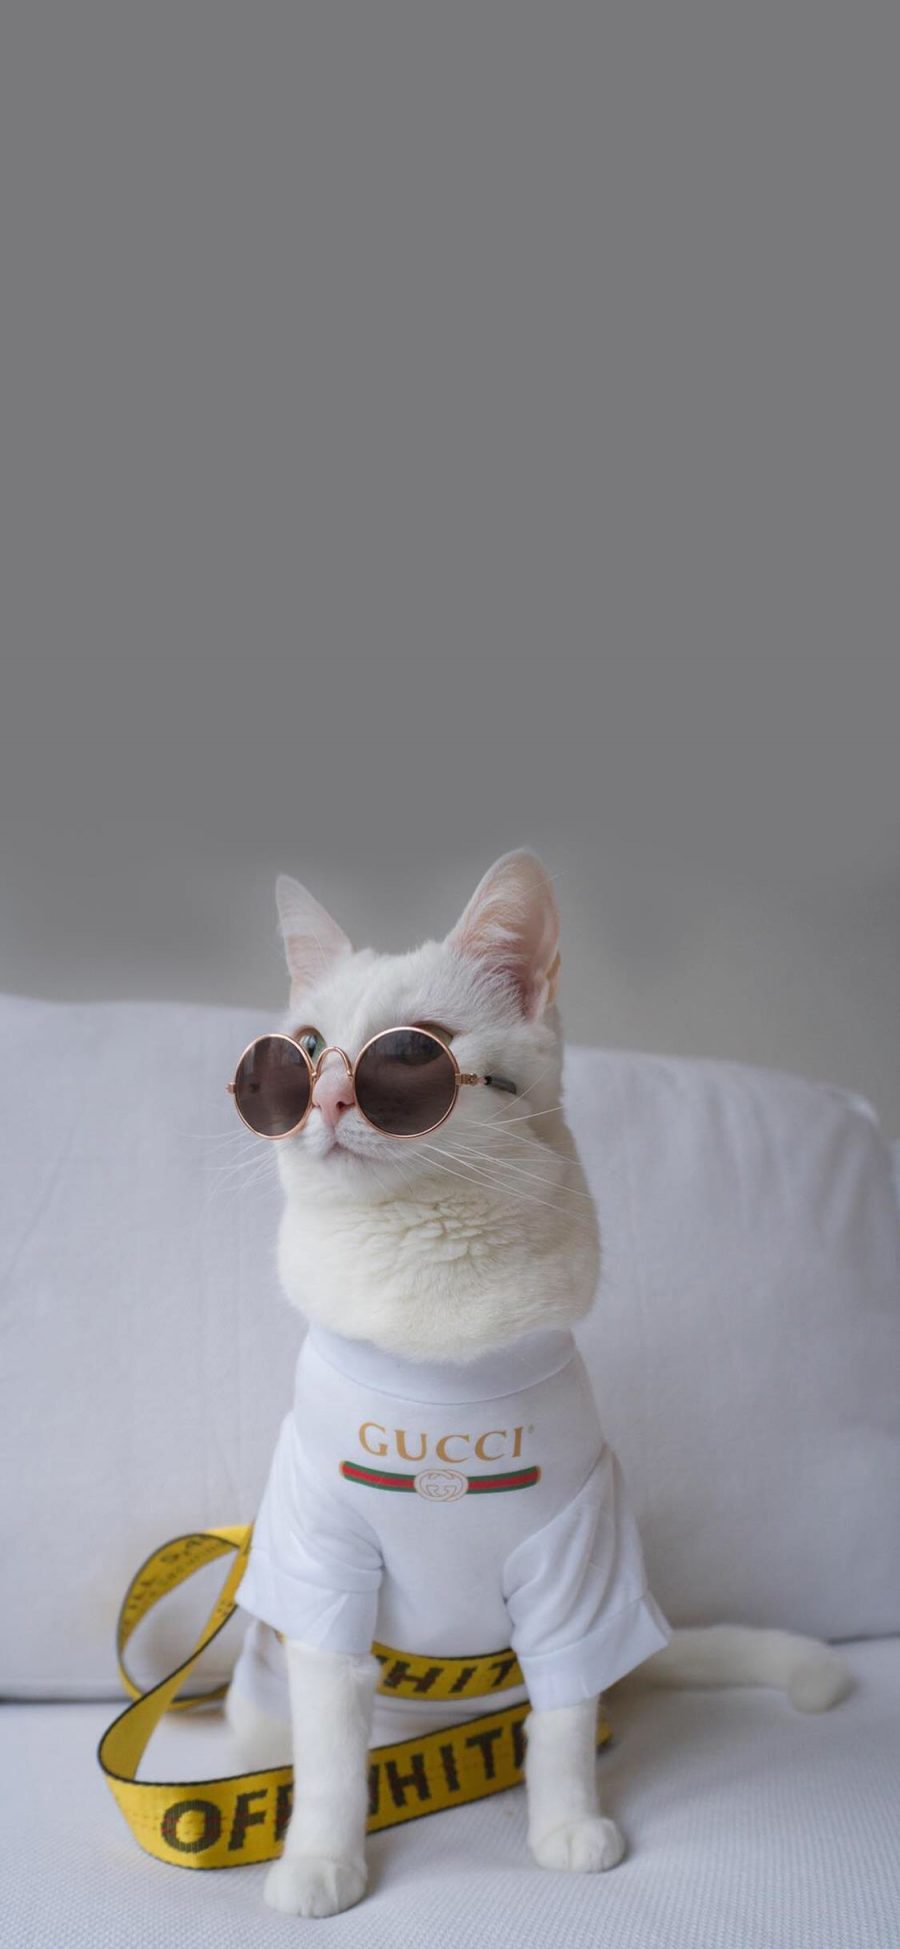 [2436×1125]猫咪 时尚 萌 宠物 喵星人 品牌 墨镜 苹果手机壁纸图片